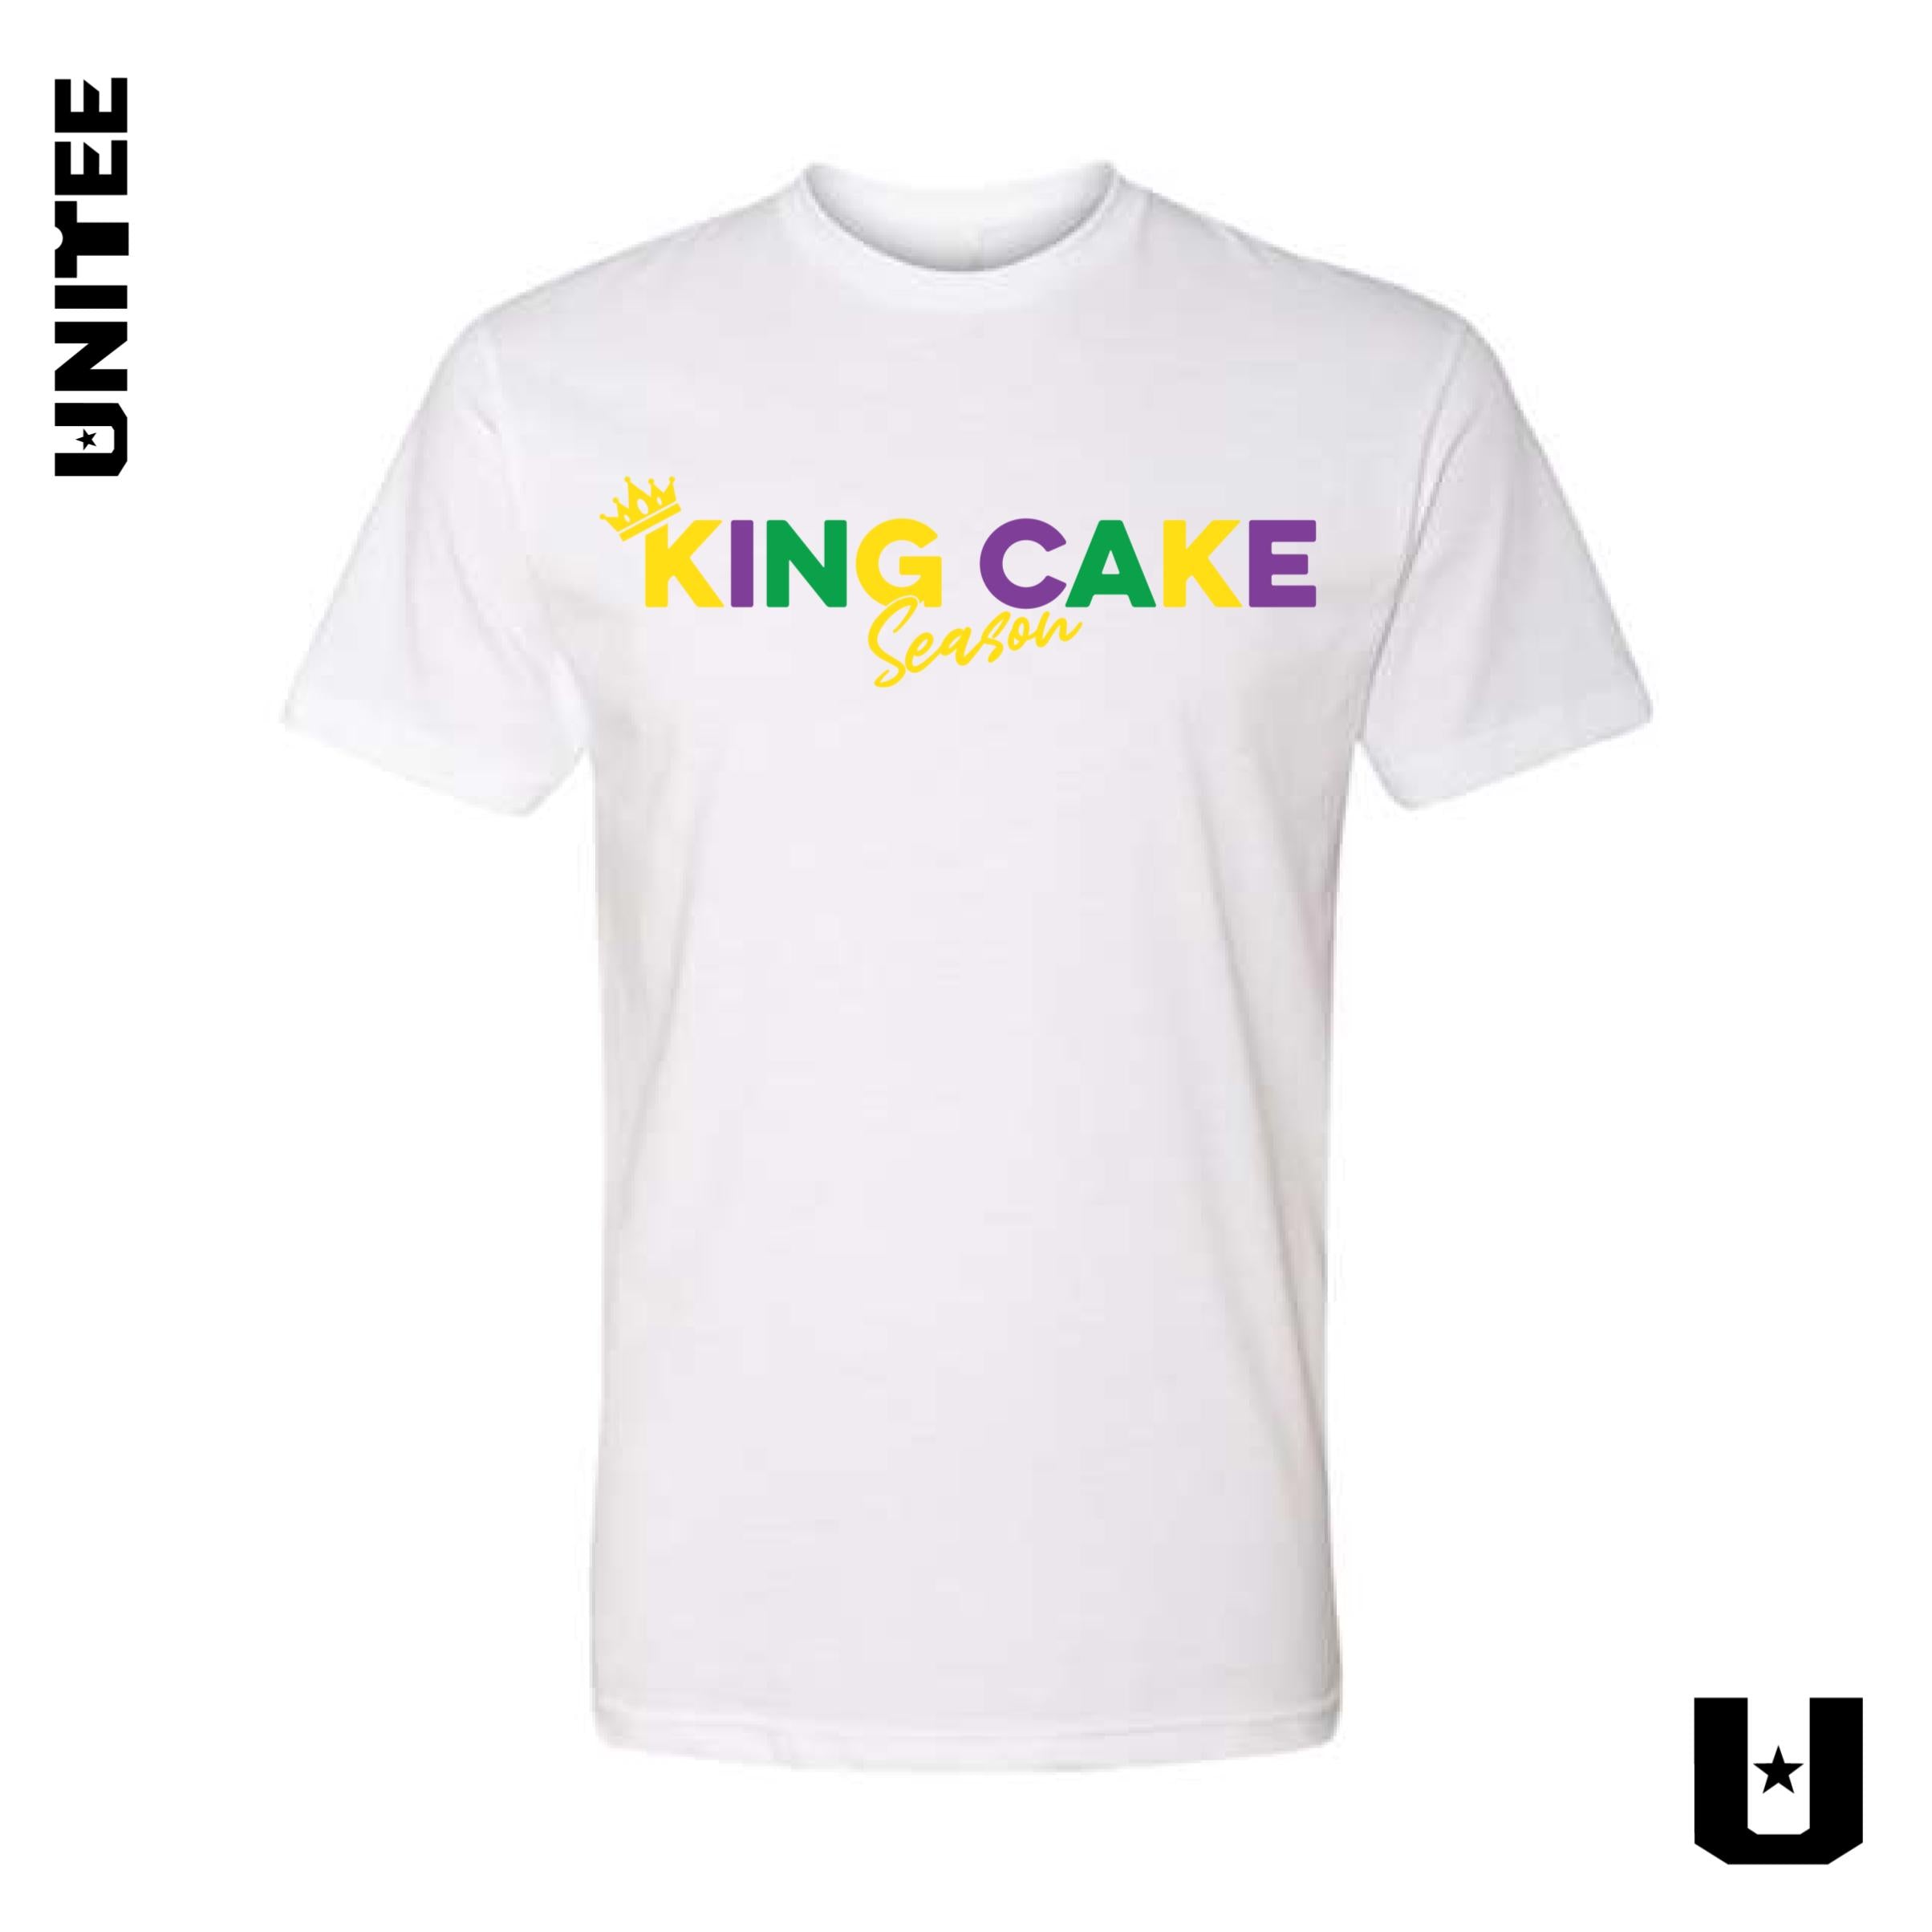 King Cake Season Unisex Tshirt